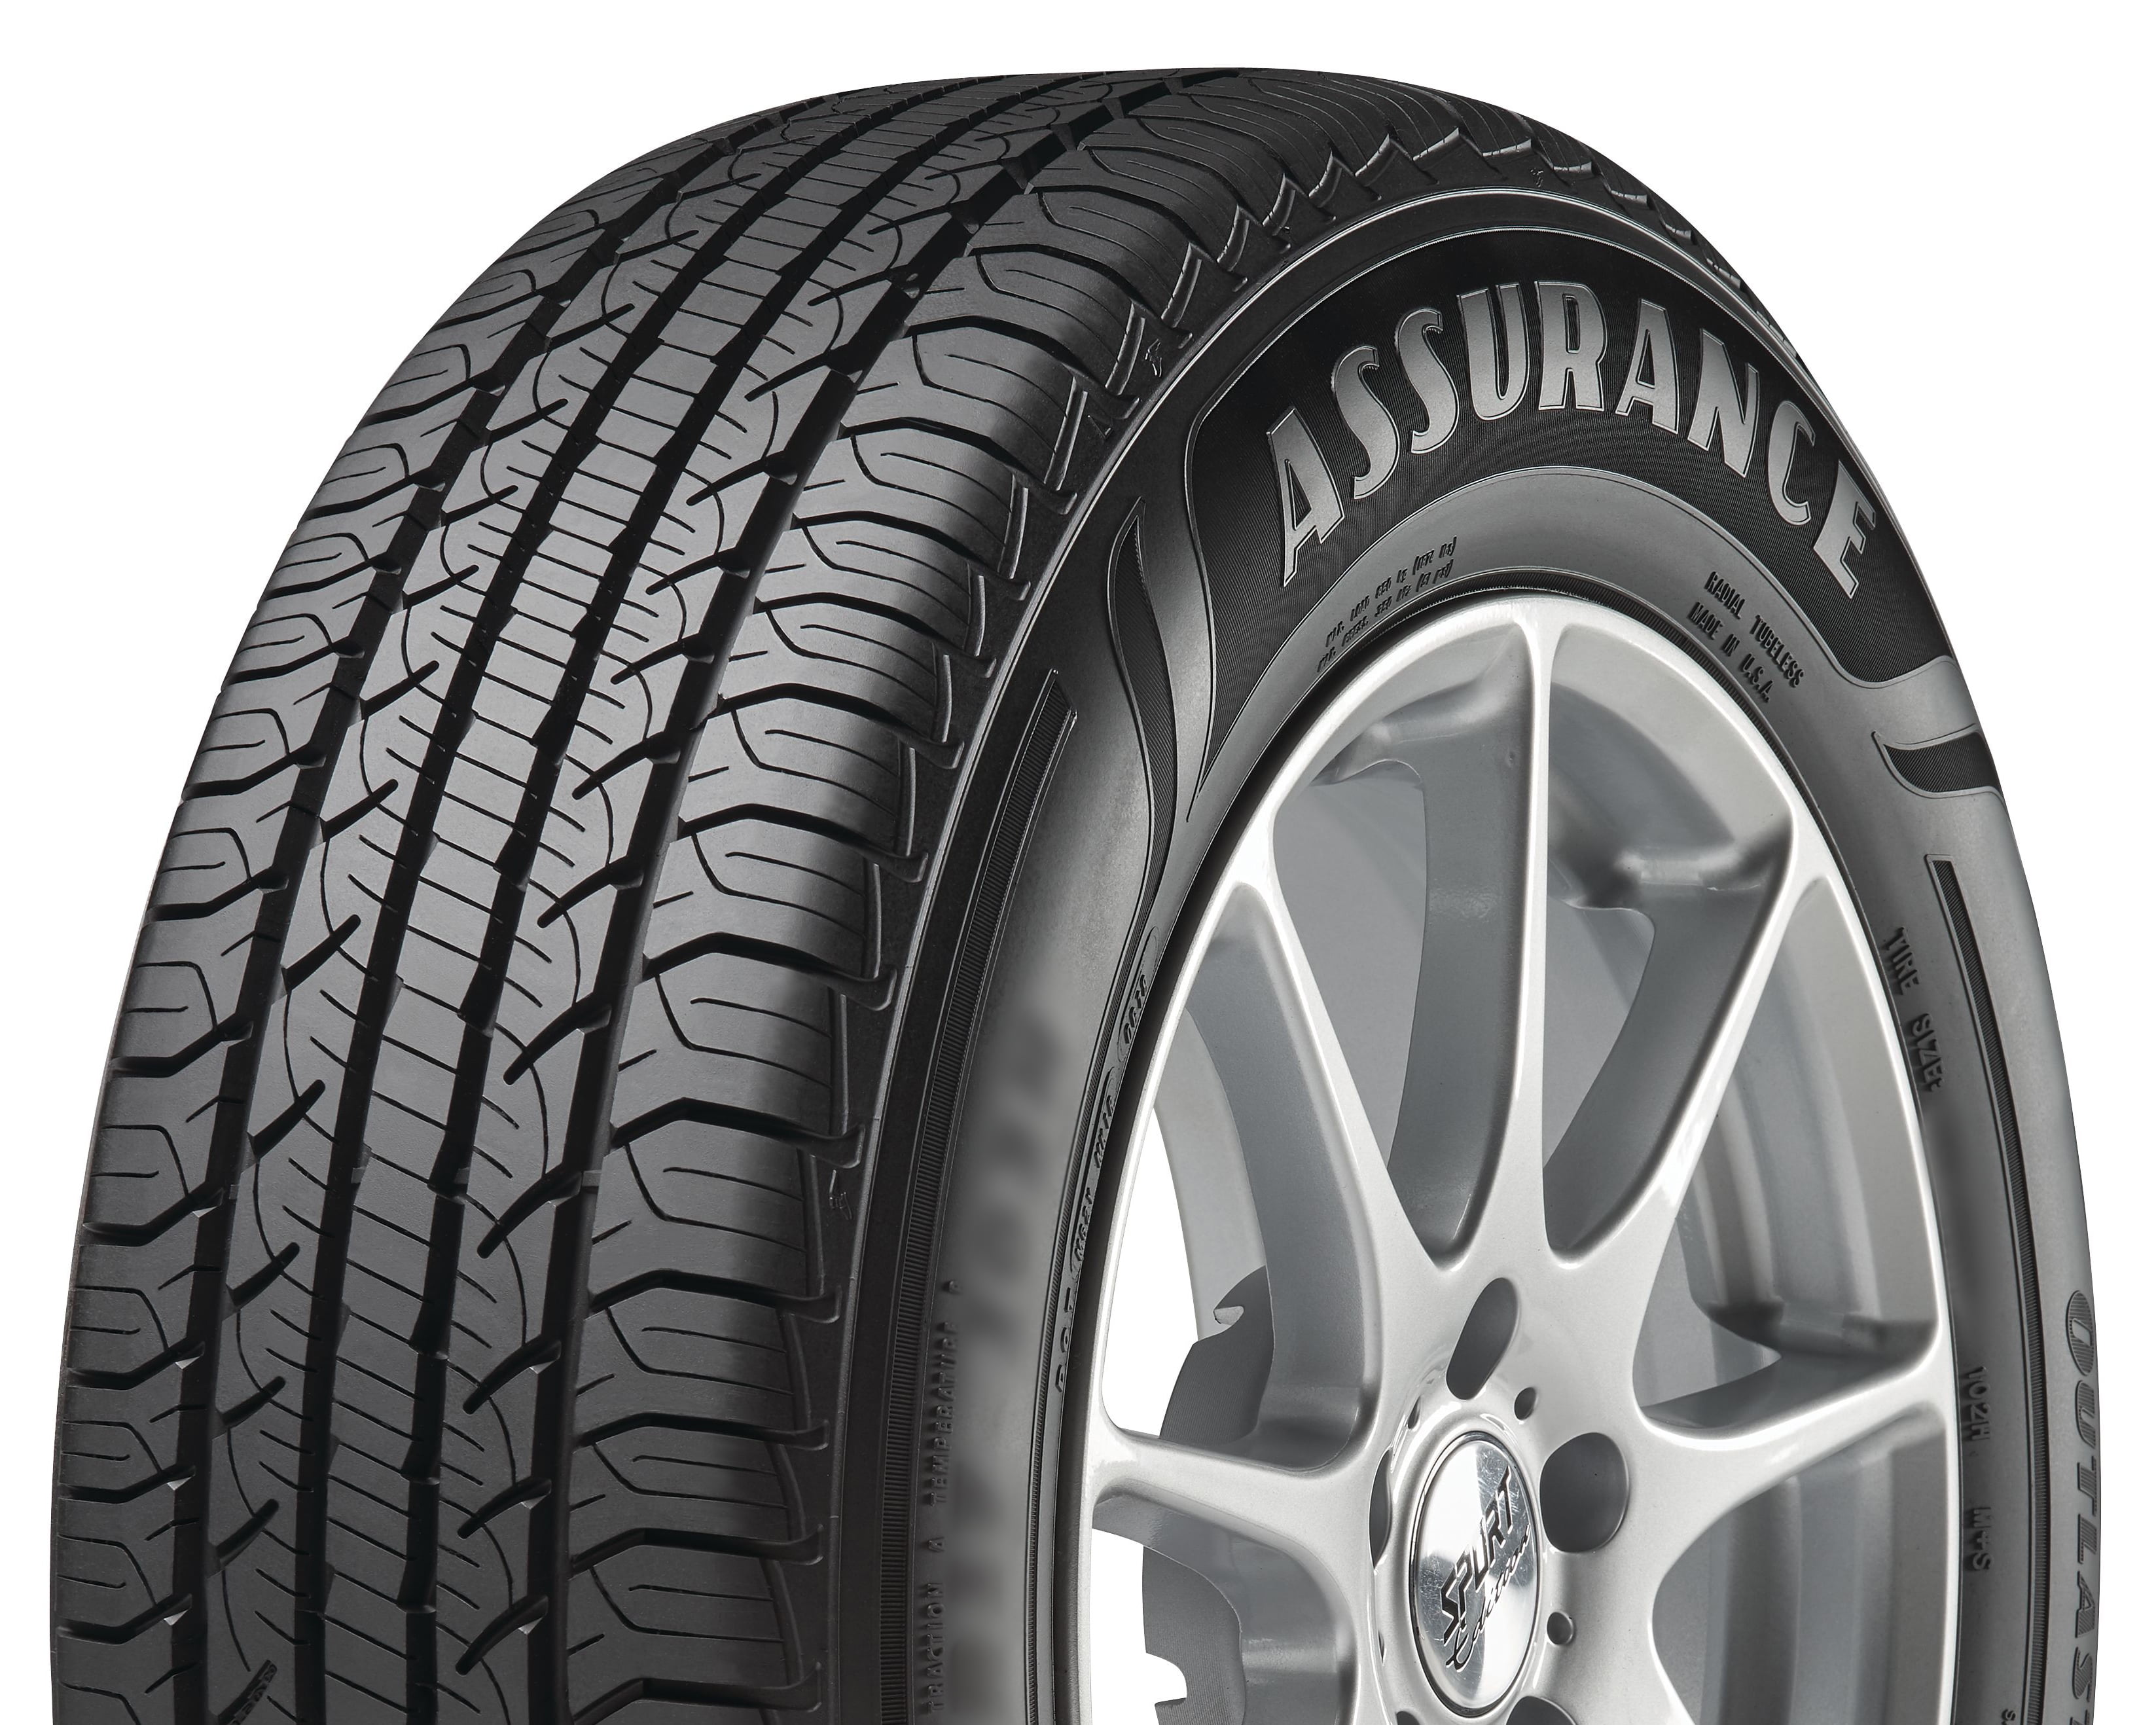 goodyear-assurance-outlast-all-season-225-65r17-102h-tire-weltecinc